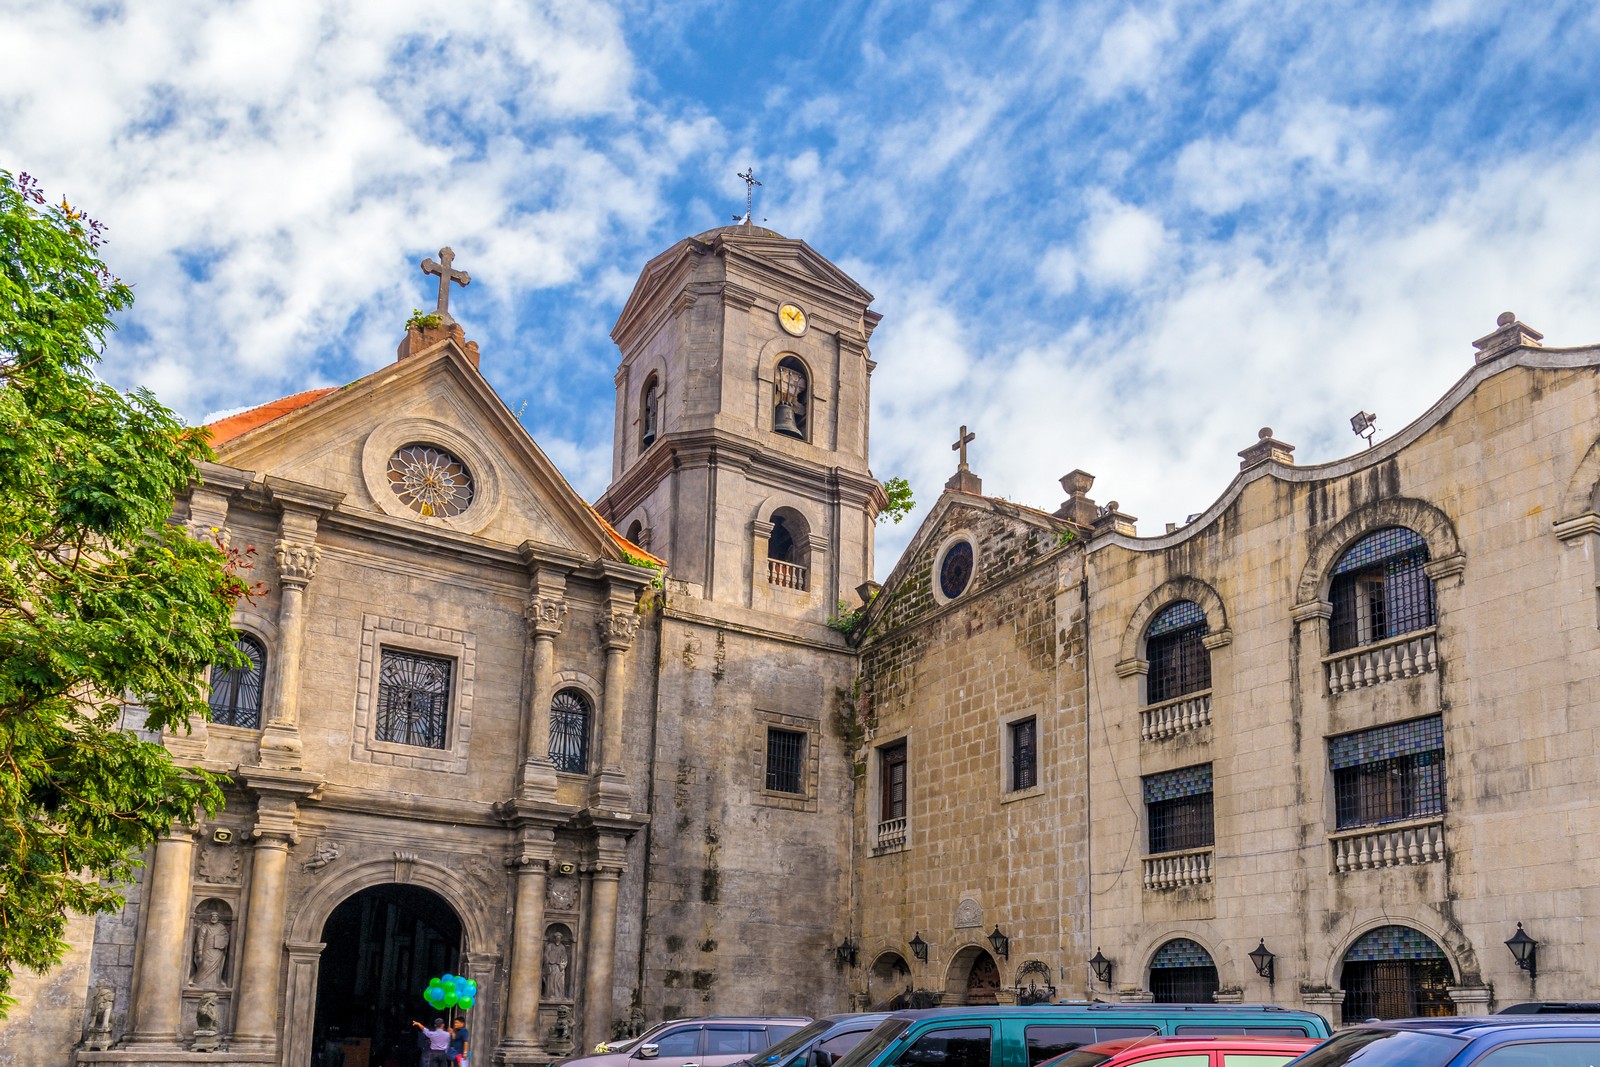 Nhà thờ San Agustin – Nhà thờ Công giáo mang kiến trúc Baroque lâu đời nhất  ở Philippines - iVIVU.com